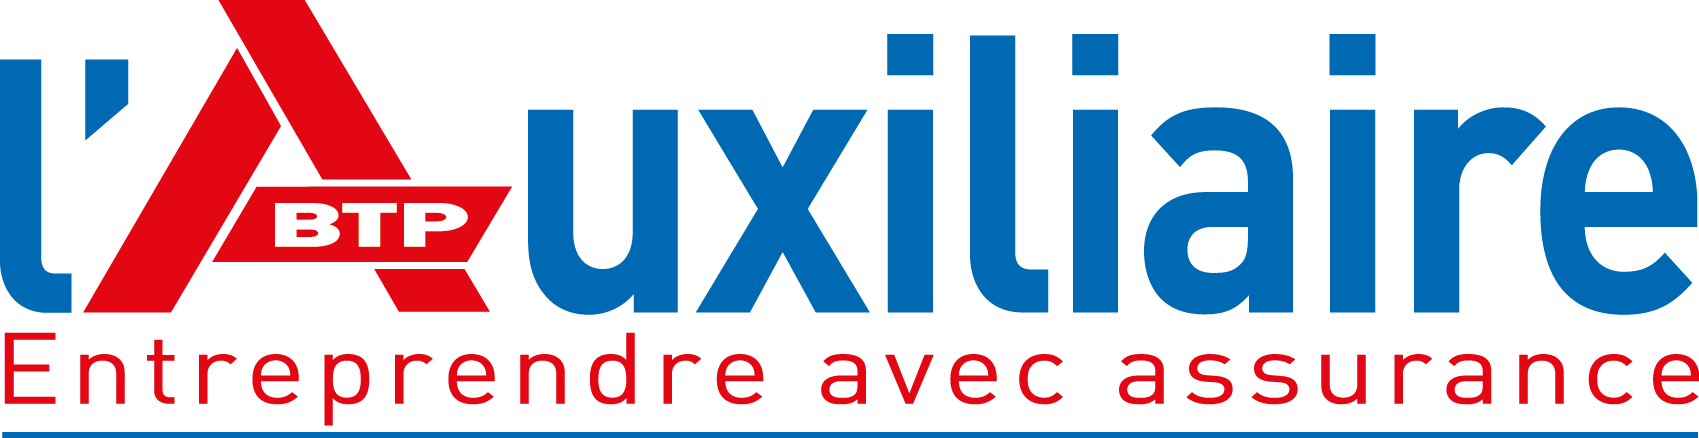 logo_l'Auxiliaire_Quadri